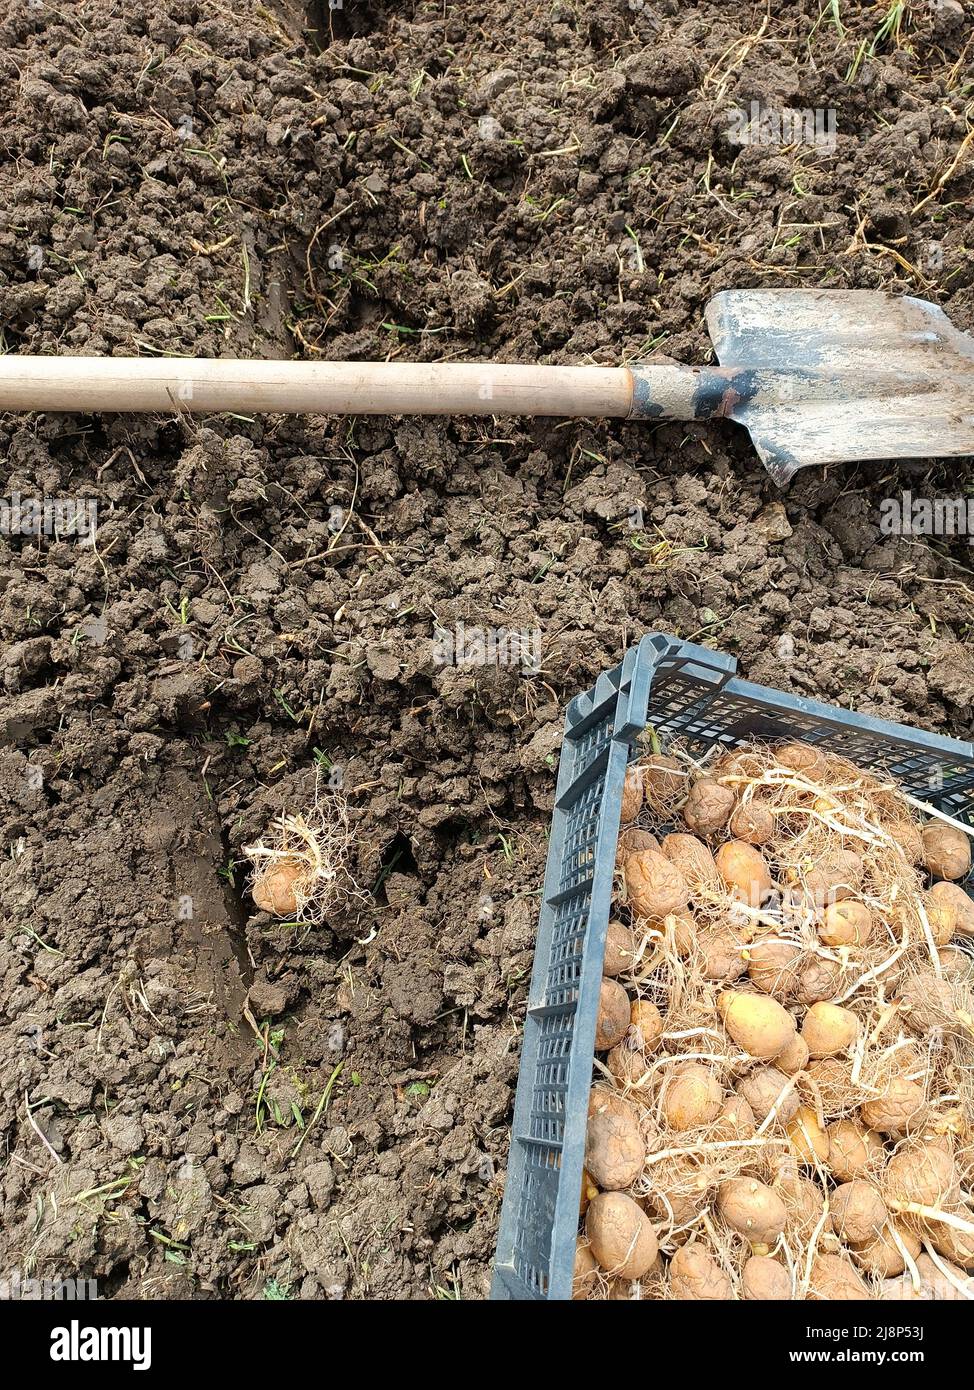 Piantando patate nel giardino. Una scatola con patate germinate, una pala e un buco nel terreno con un tubero. Foto Stock